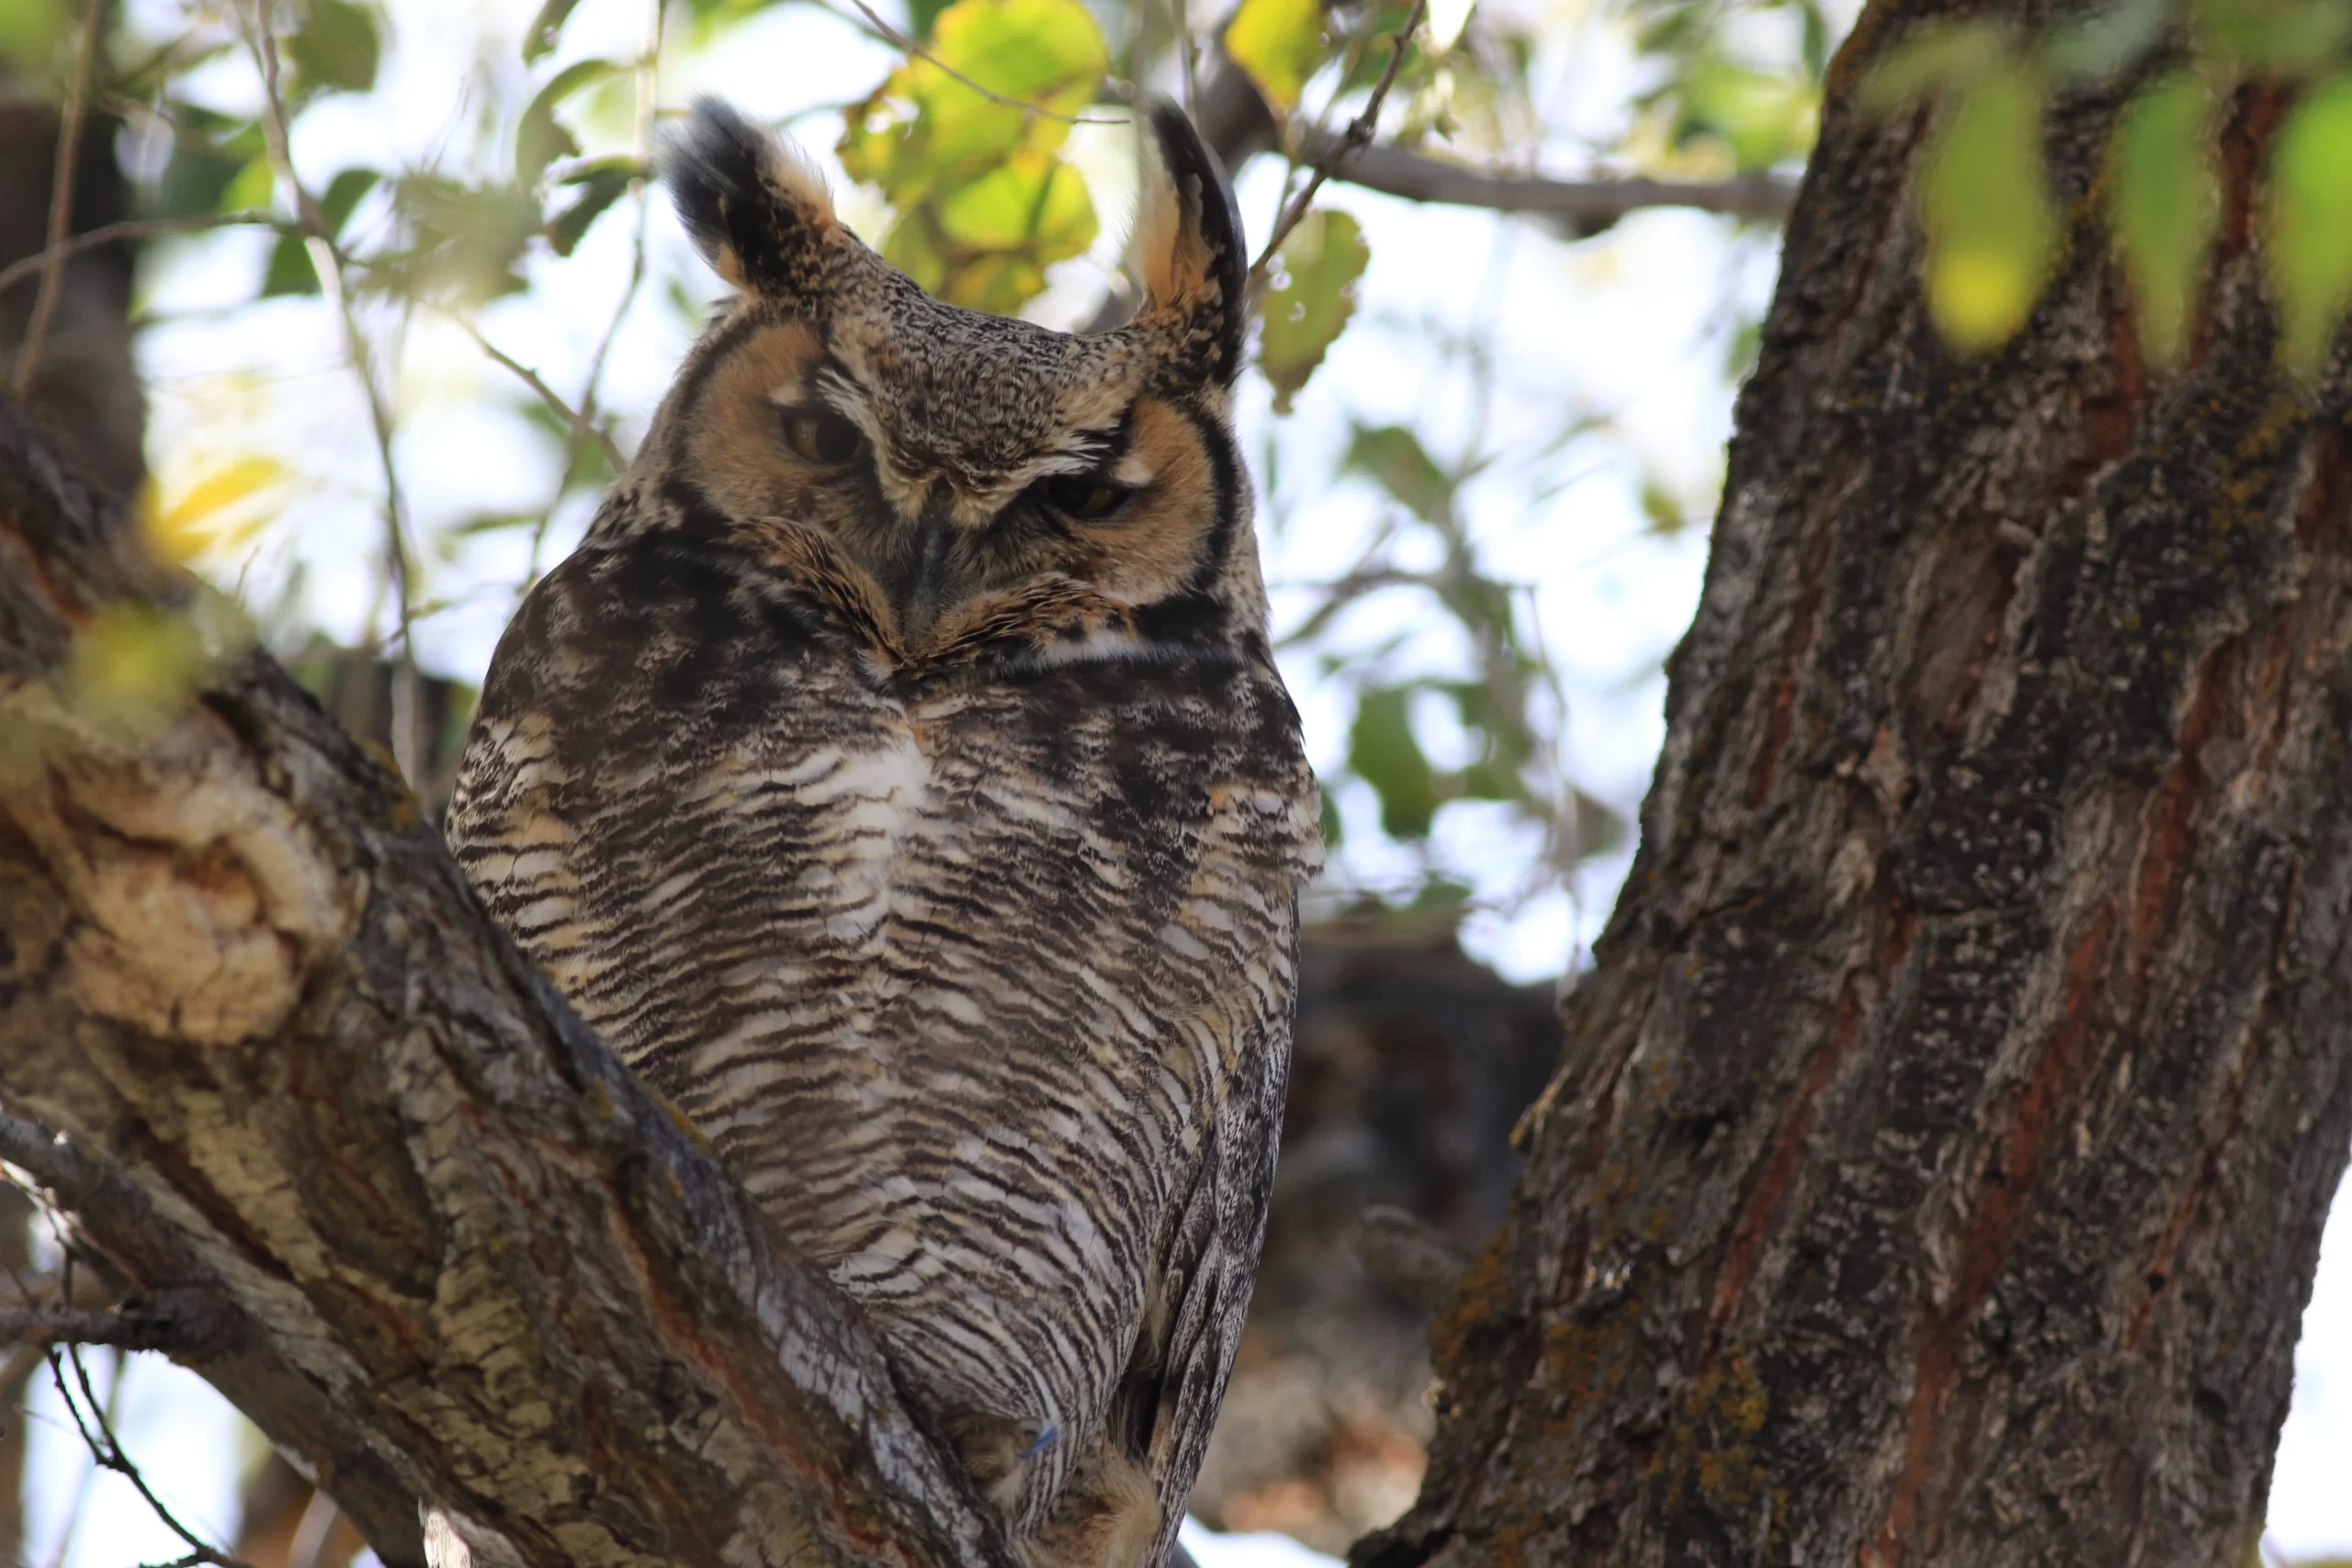 pam-riches-owl in closeup-unsplash